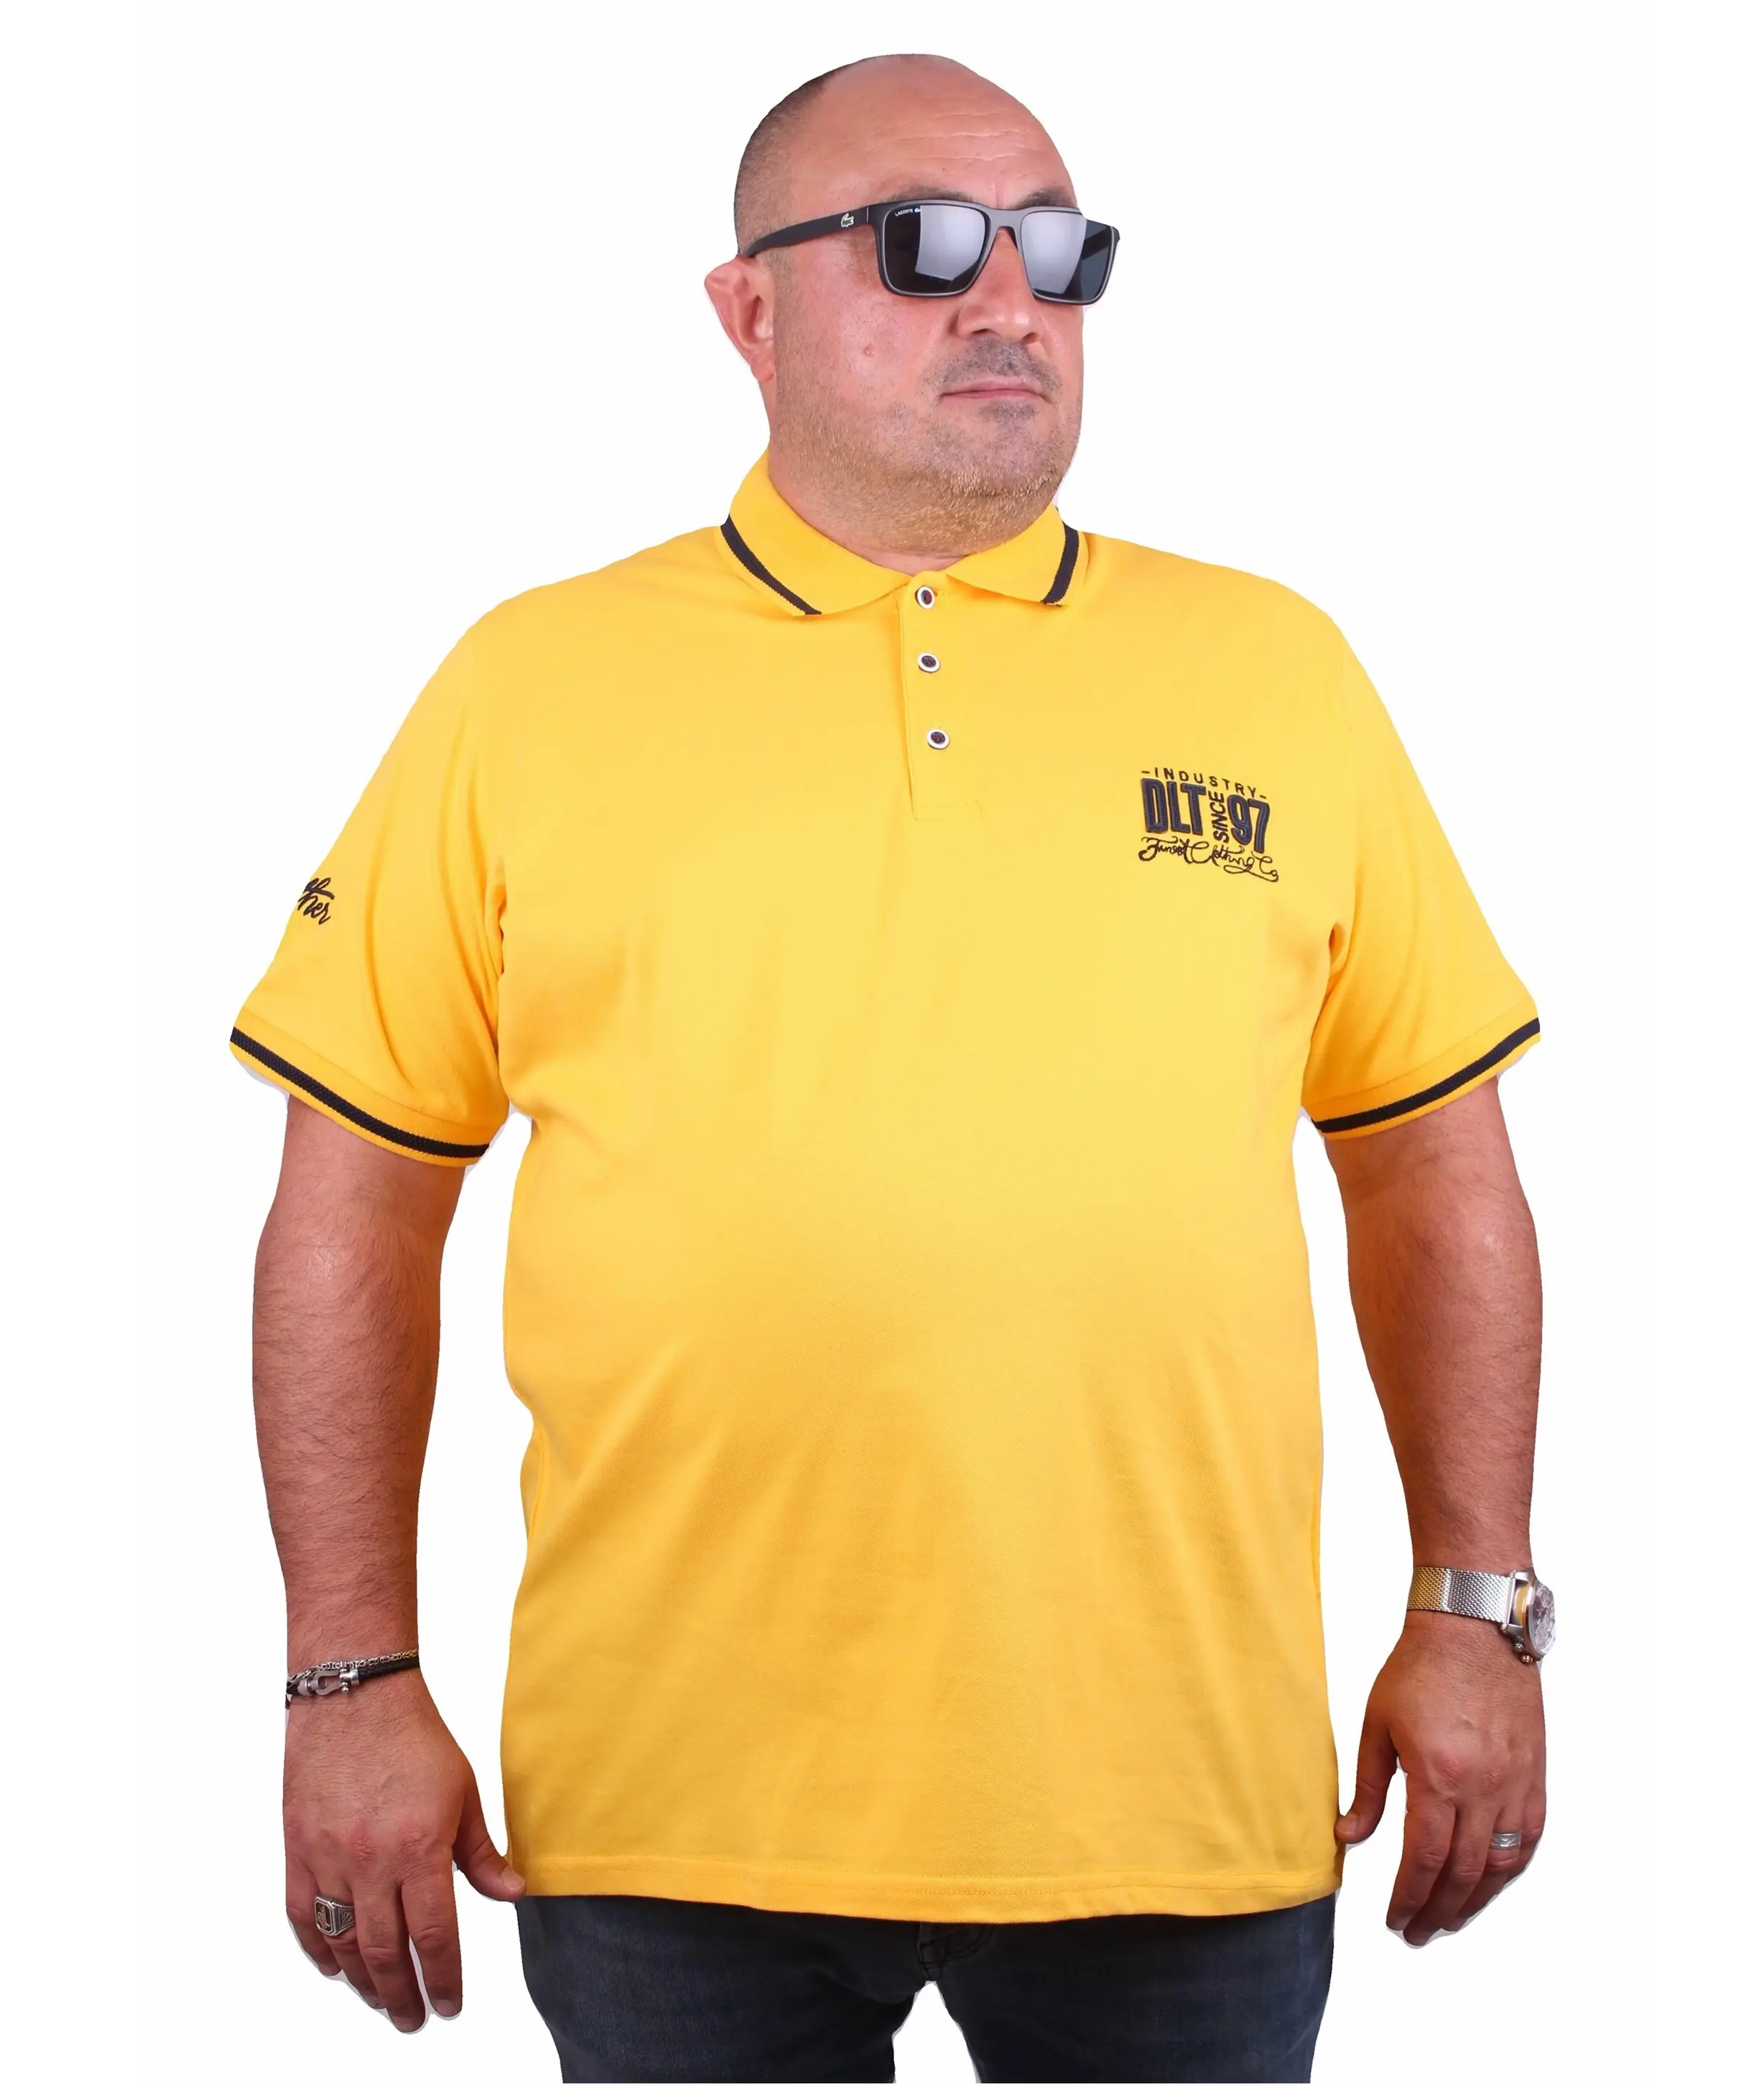 Camisetas para homens 100% algodão cor amarela gola redonda personalizada estampada - camisa polo pesada de qualidade premium feita na Turquia